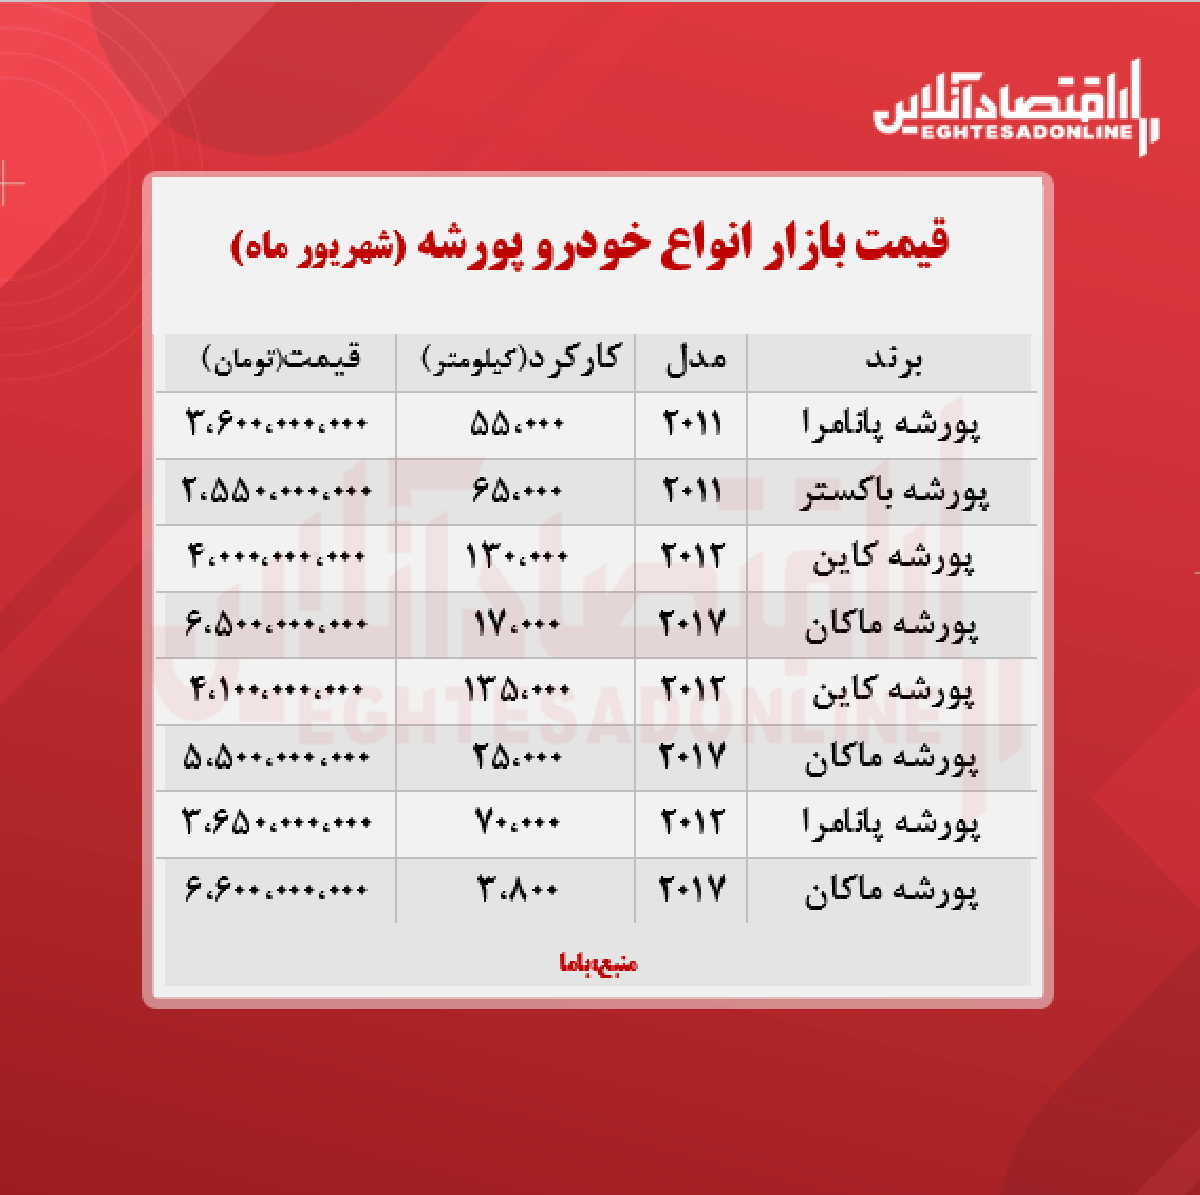 قیمت انواع پورشه در تهران + جدول